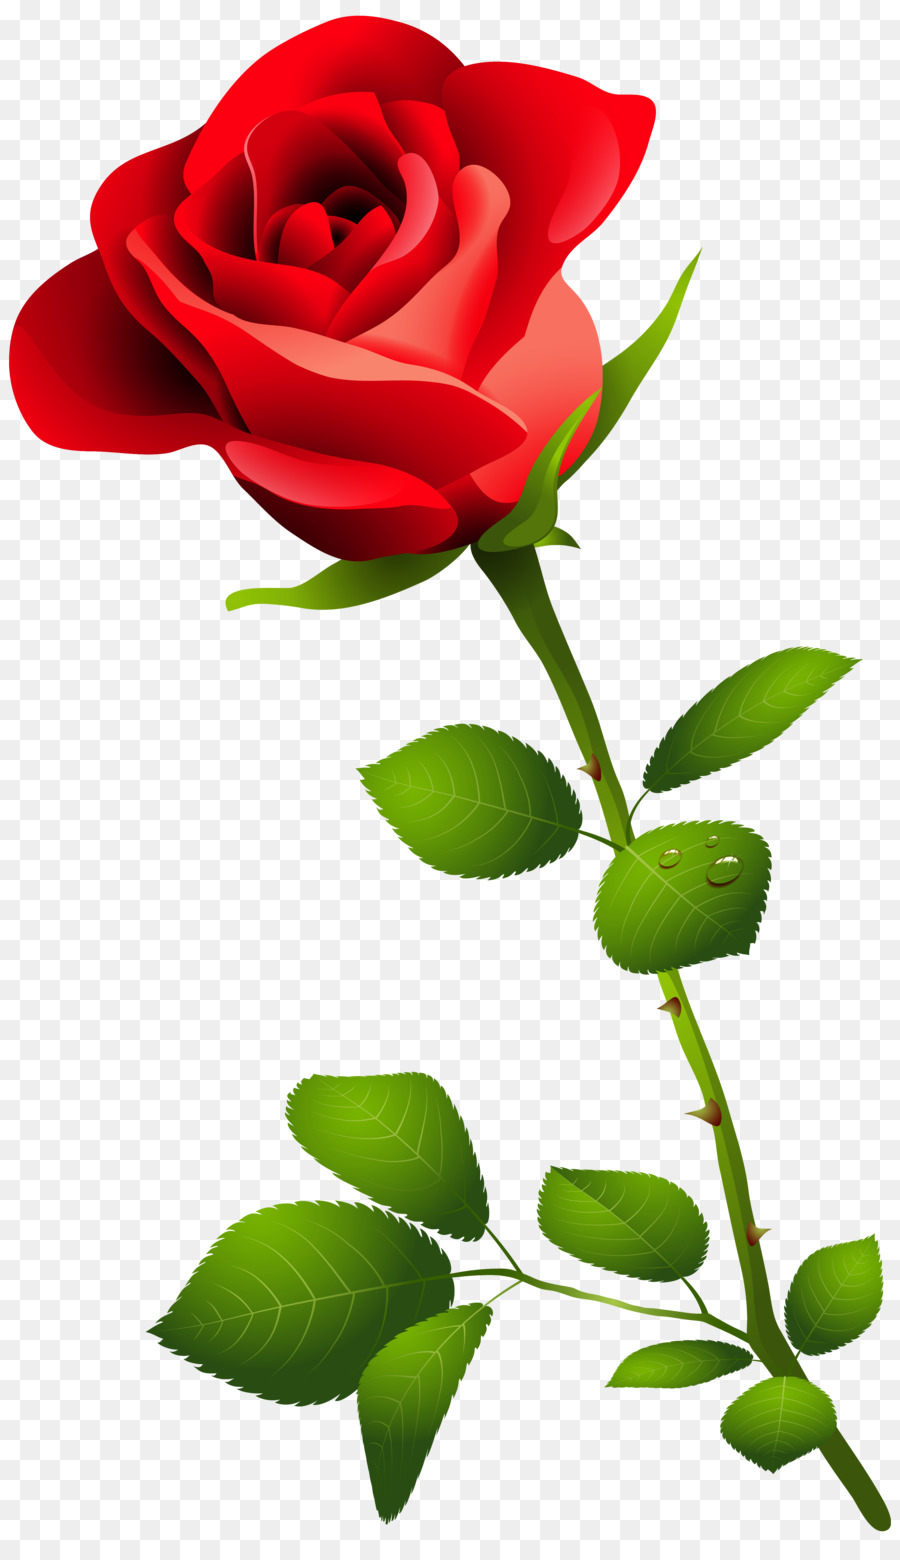 Rose Desktop Wallpaper Flower Clip art - Watercolor Flower Red png download - 3658*6286 - Free Transparent Rose png Download.